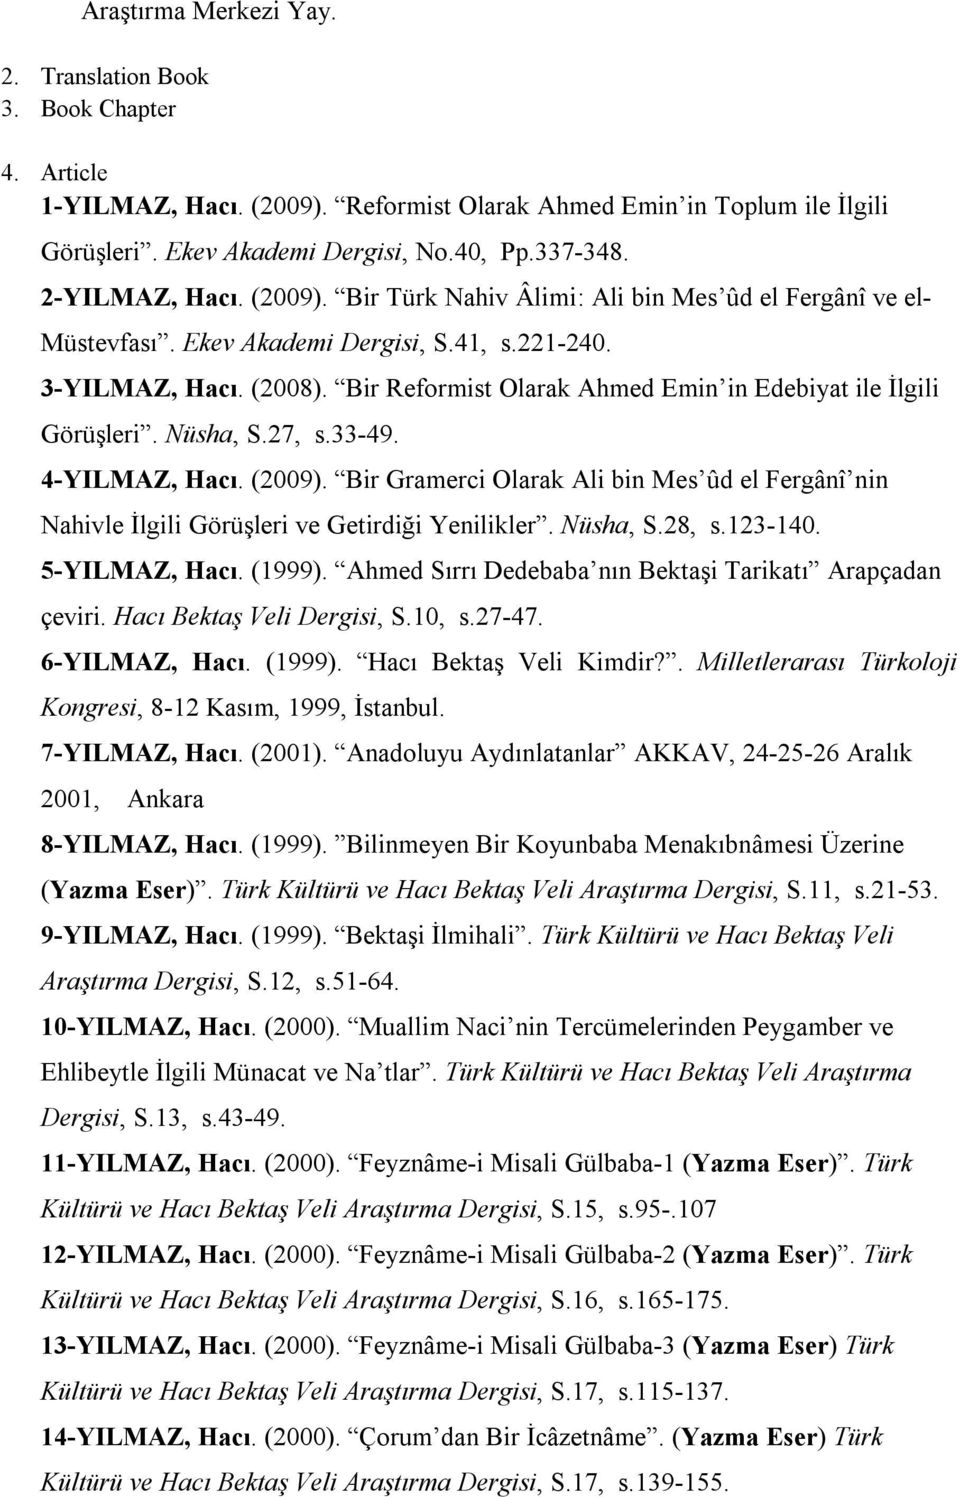 Bir Reformist Olarak Ahmed Emin in Edebiyat ile İlgili Görüşleri. Nüsha, S.27, s.33-49. 4-YILMAZ, Hacı. (2009).